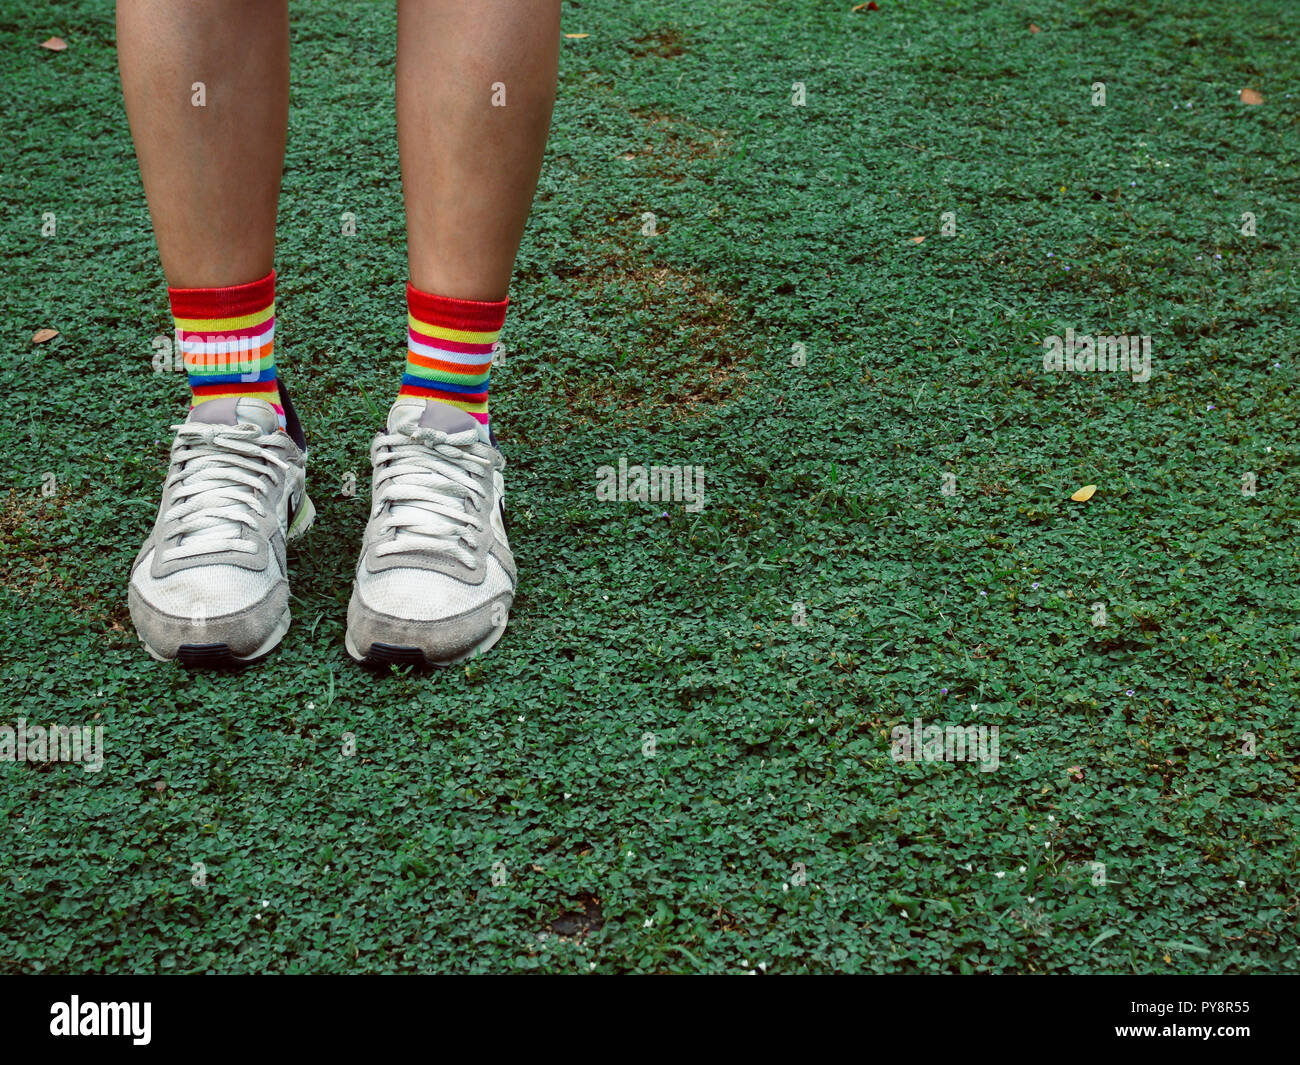 Beine tragen bunte elegant socken und weißen Turnschuhen auf grünem Feld  hipster Stil mit Kopieren Stockfotografie - Alamy